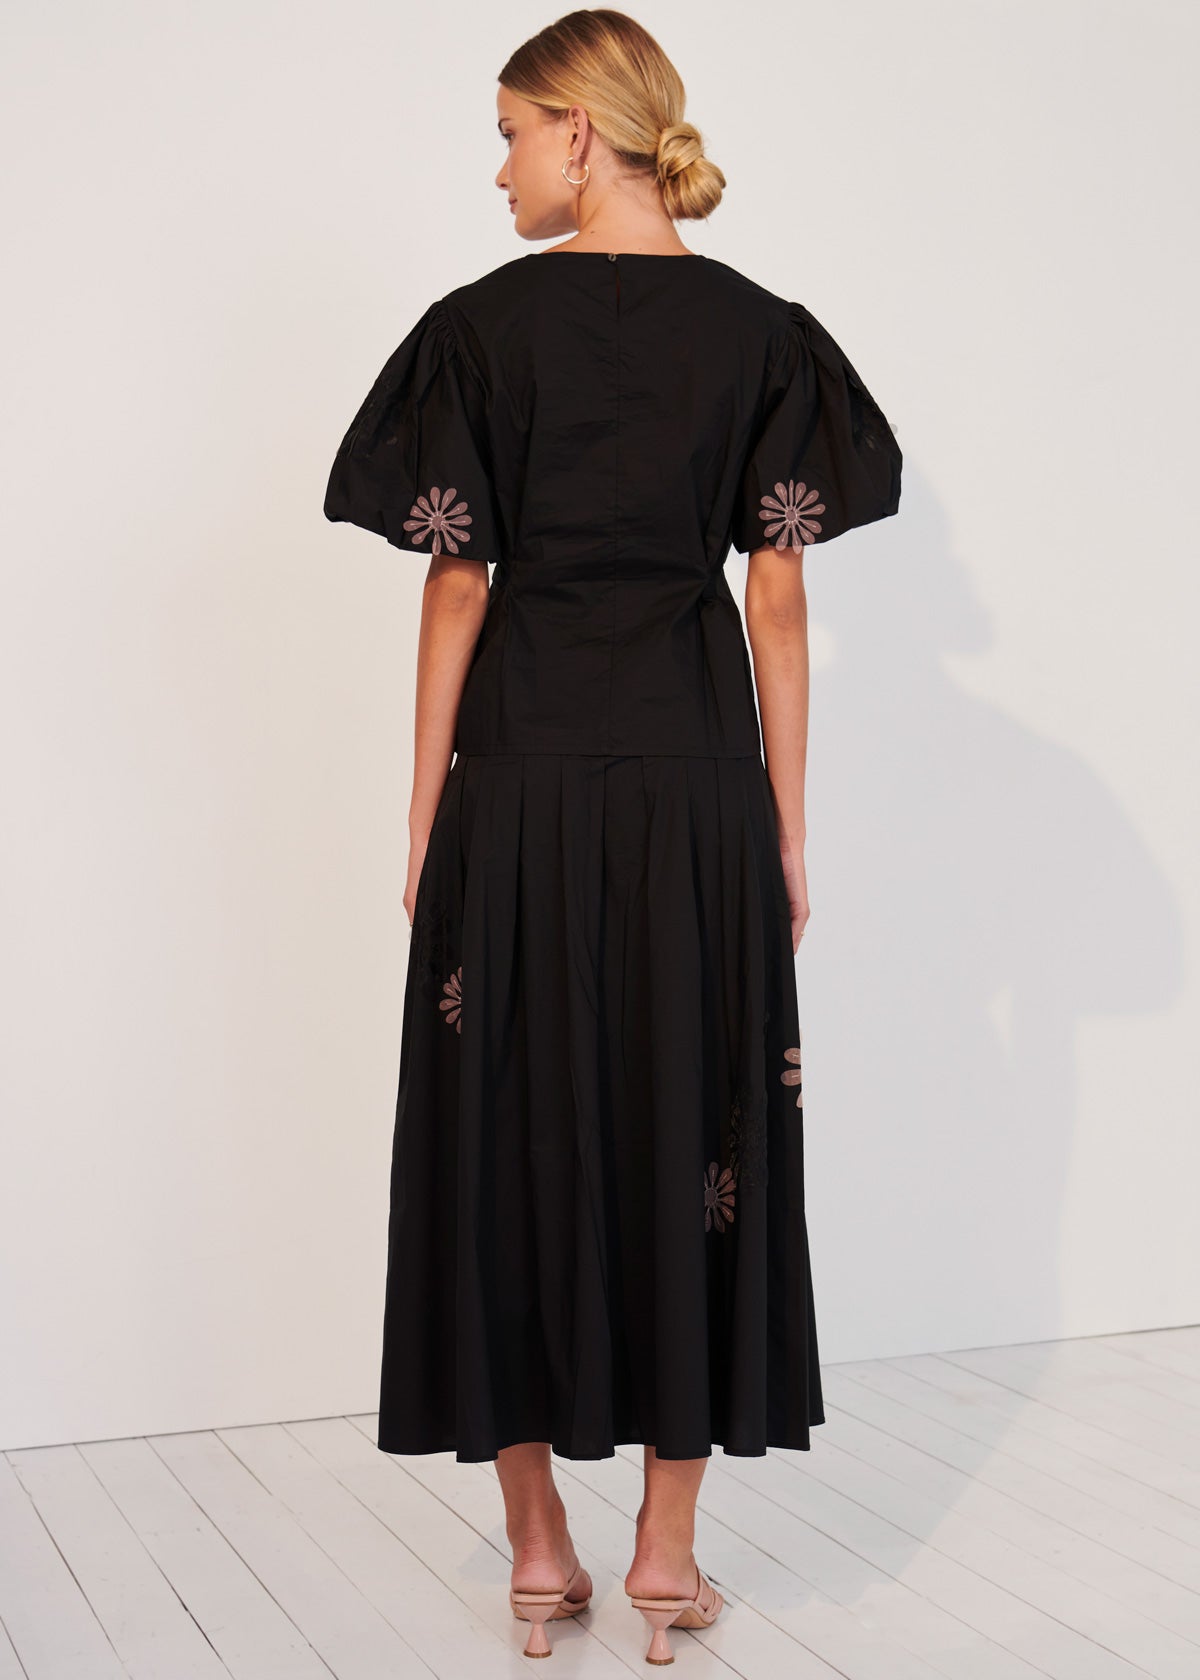 Chiara Pleated Skirt - Black